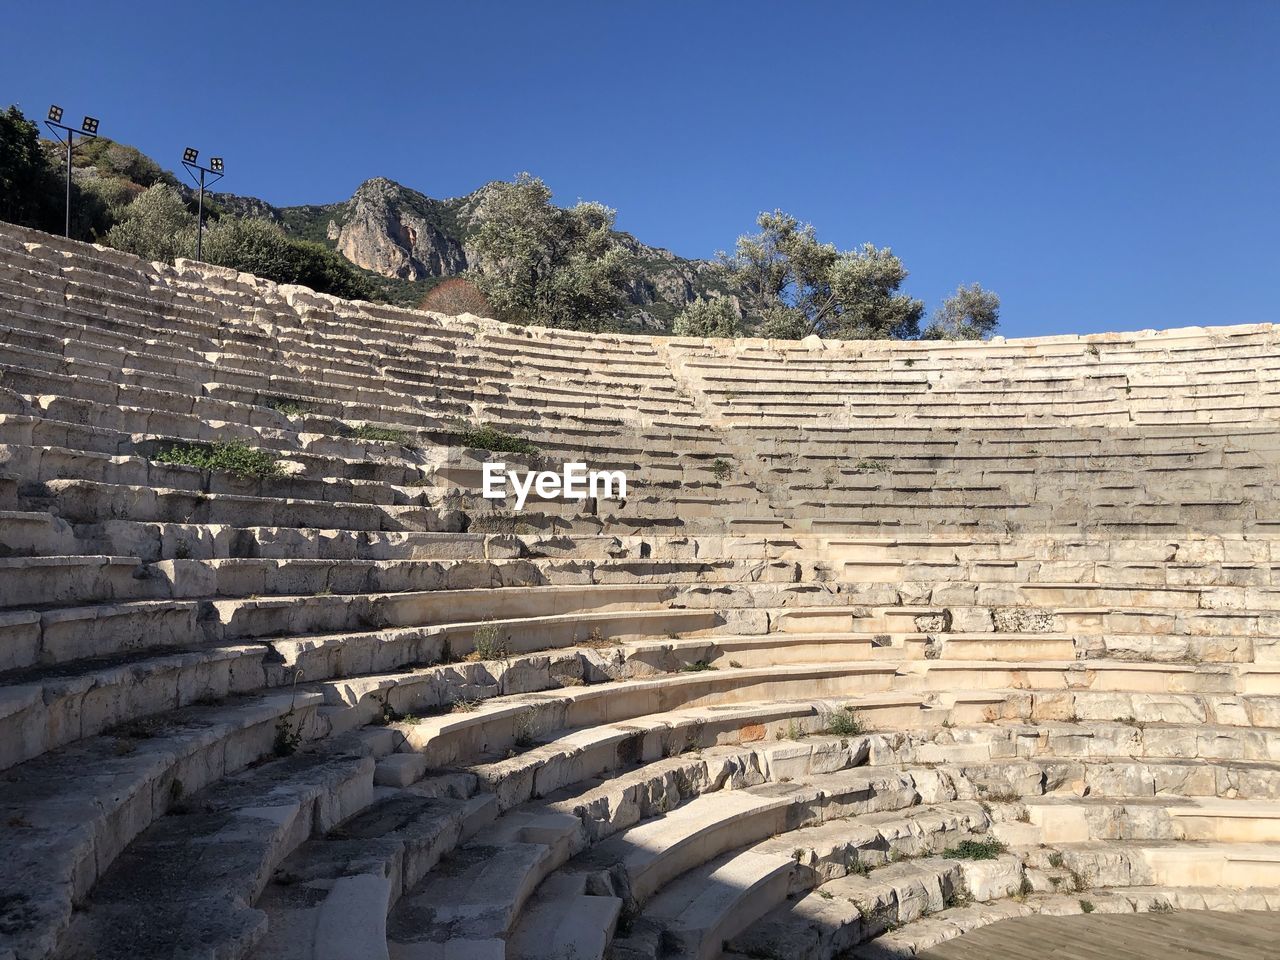 Antiphellos ancient theater kas/antalya/turkey